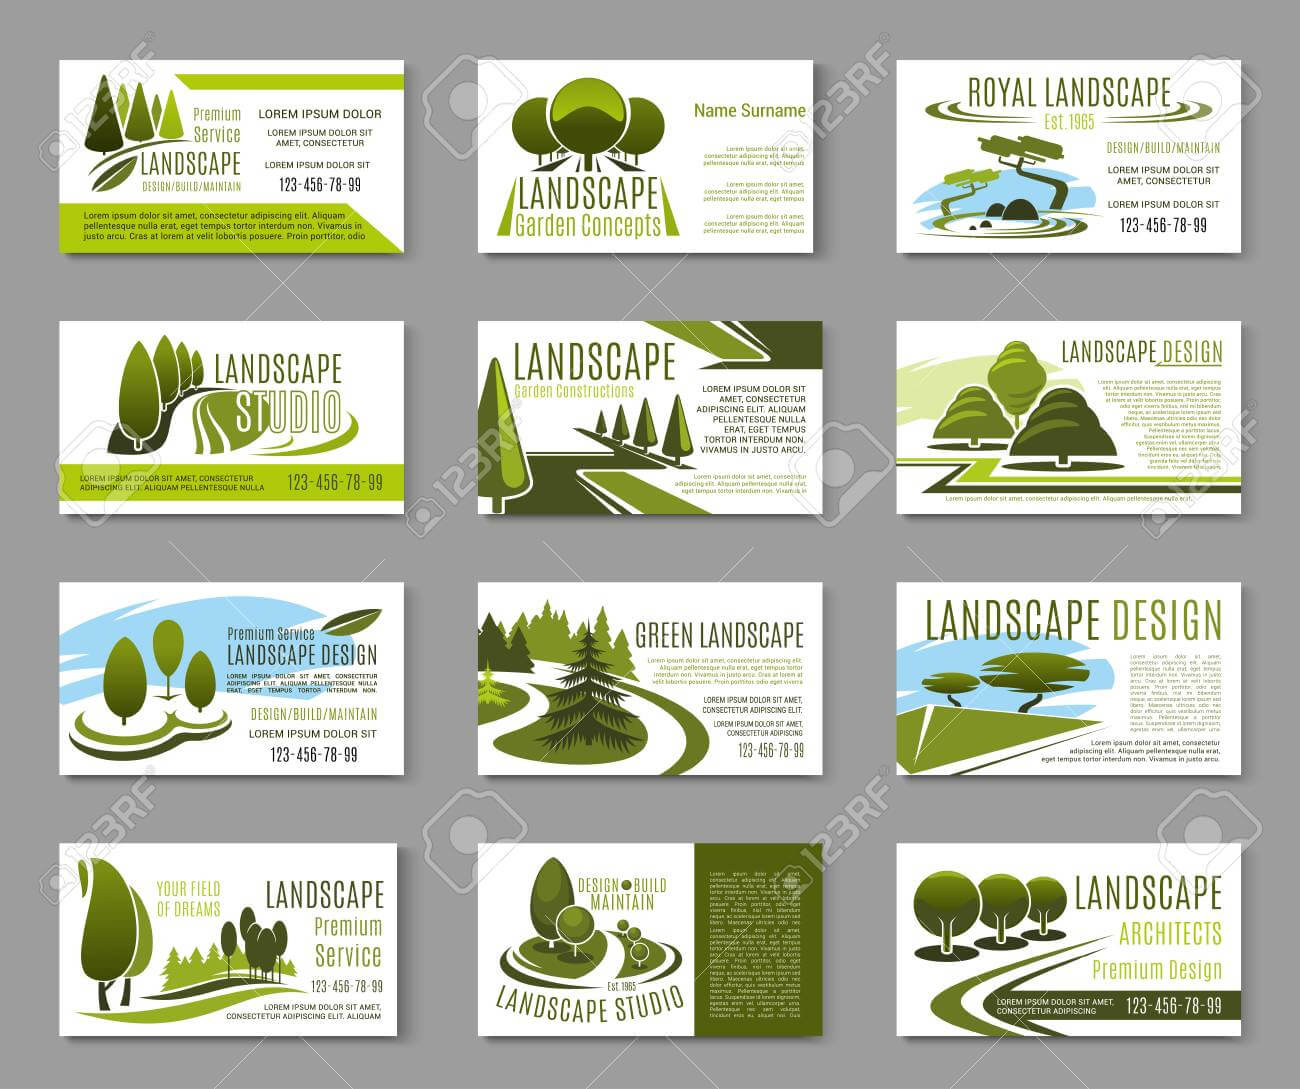 Landscape Design Studio Business Card Template Regarding Landscaping Business Card Template